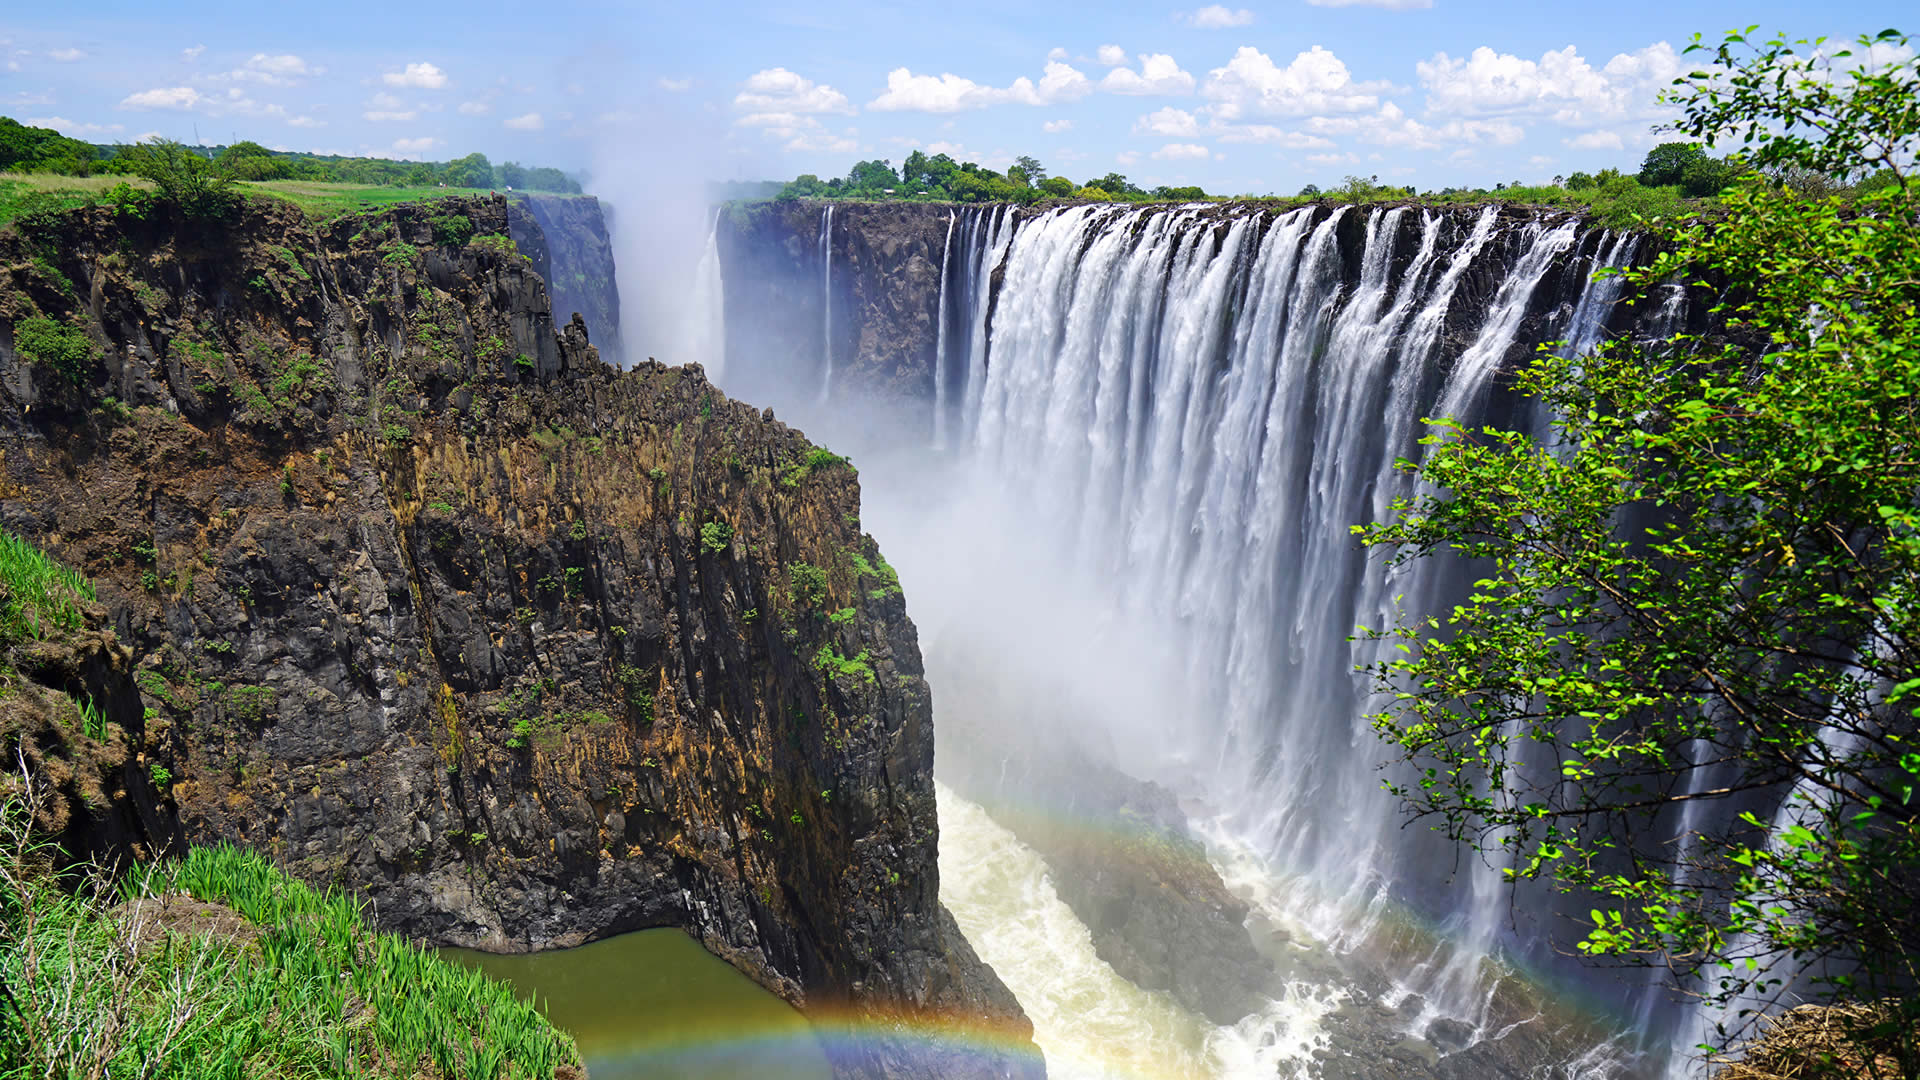 Victoria Falls, Zambia/Zimbabwe beautiful places